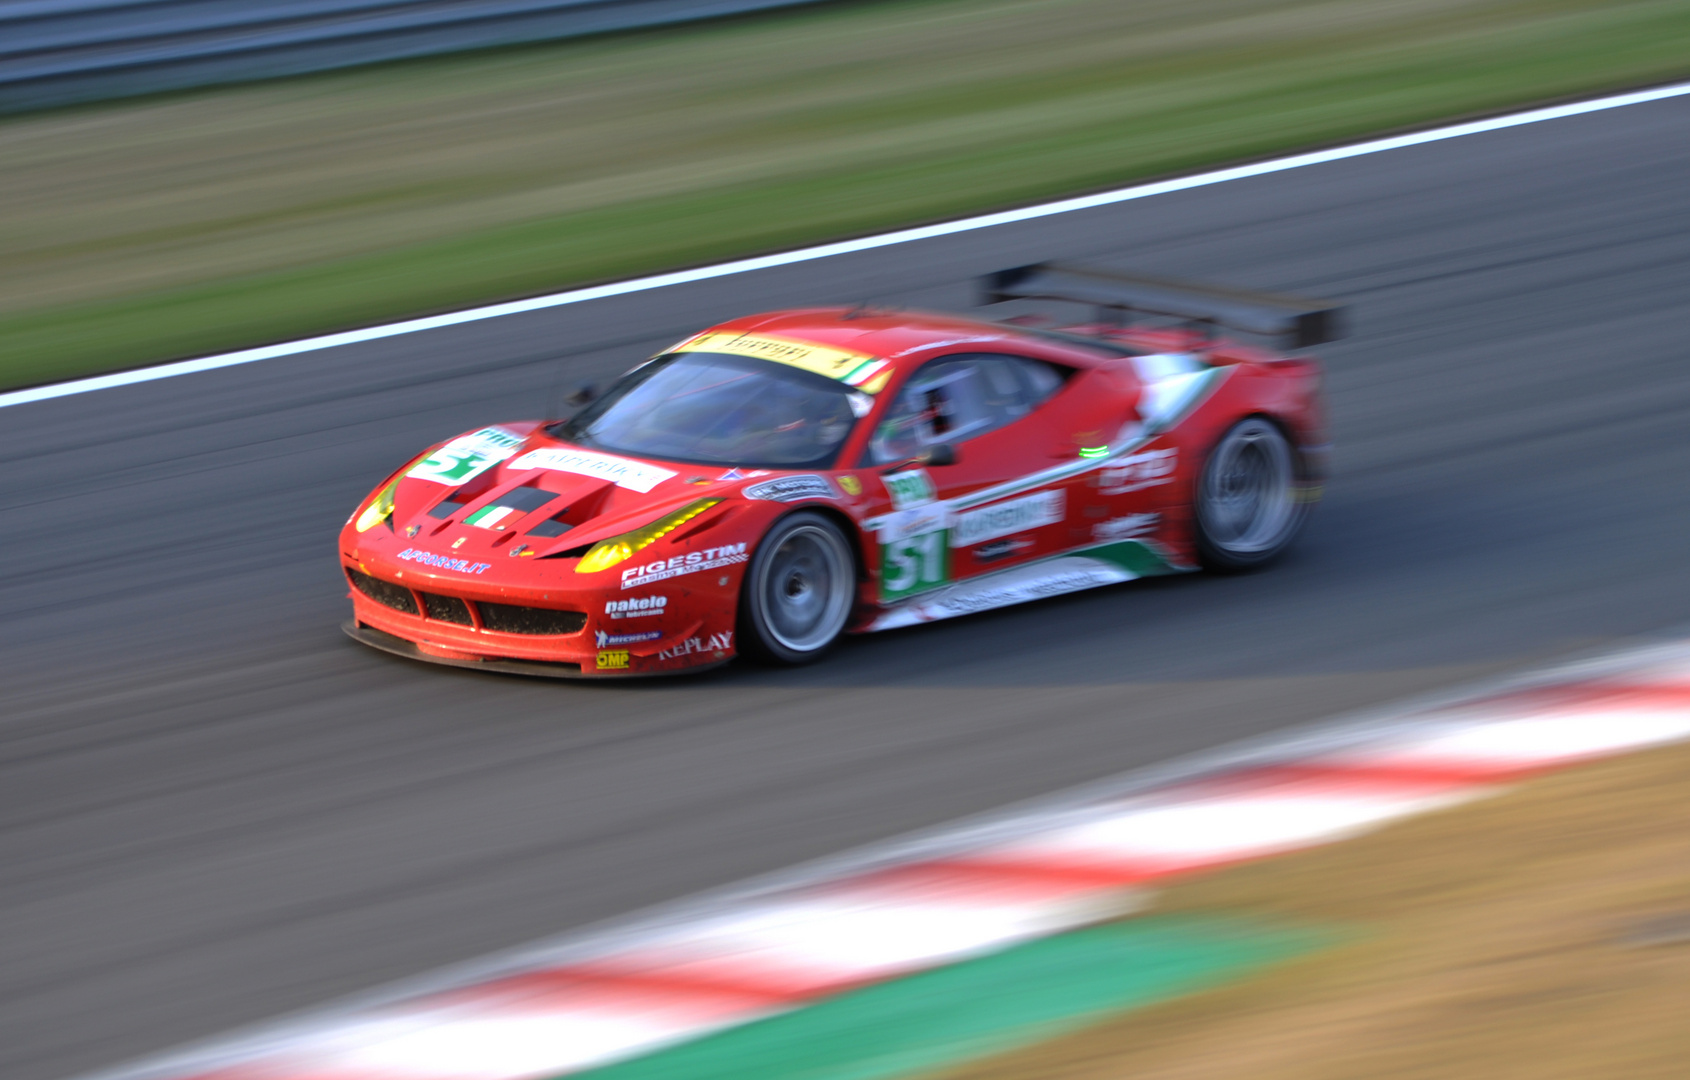 -- > AF Corse Ferrari 458 LM GTE Pro / Fisichella - Bruni 